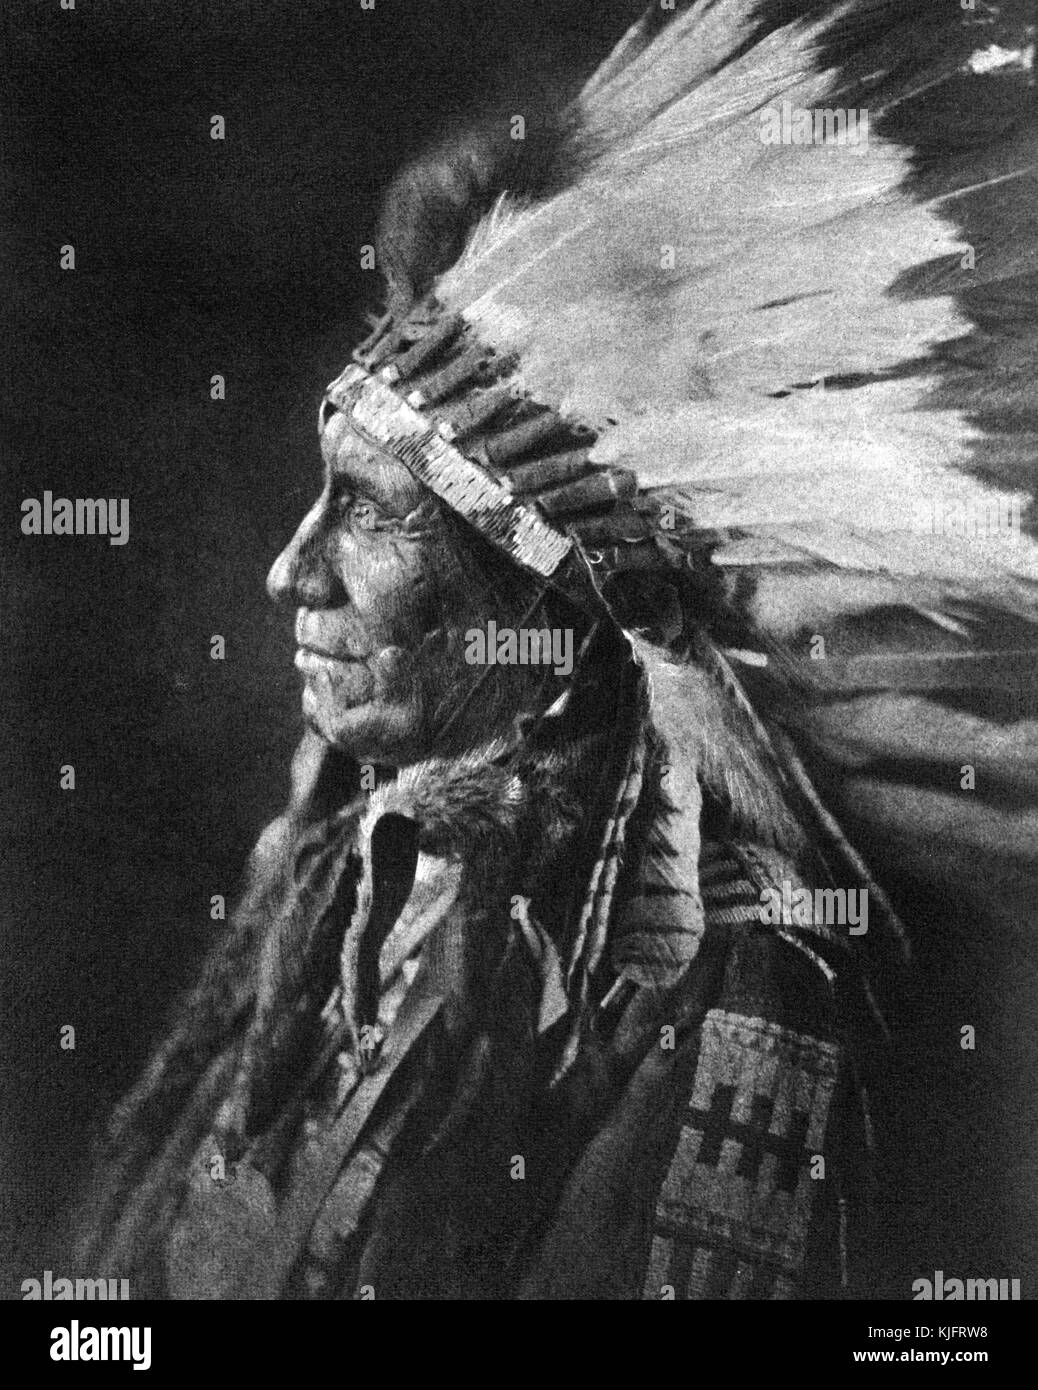 Un portrait photographique de l'américain, il était un chef Lakota oglala, il a agi en tant que scout indien de l'armée américaine et s'oppose à cheval fou au cours de la grande guerre sioux, il a aussi été le délégué lakota à Washington, 1906. à partir de la bibliothèque publique de new york. Banque D'Images